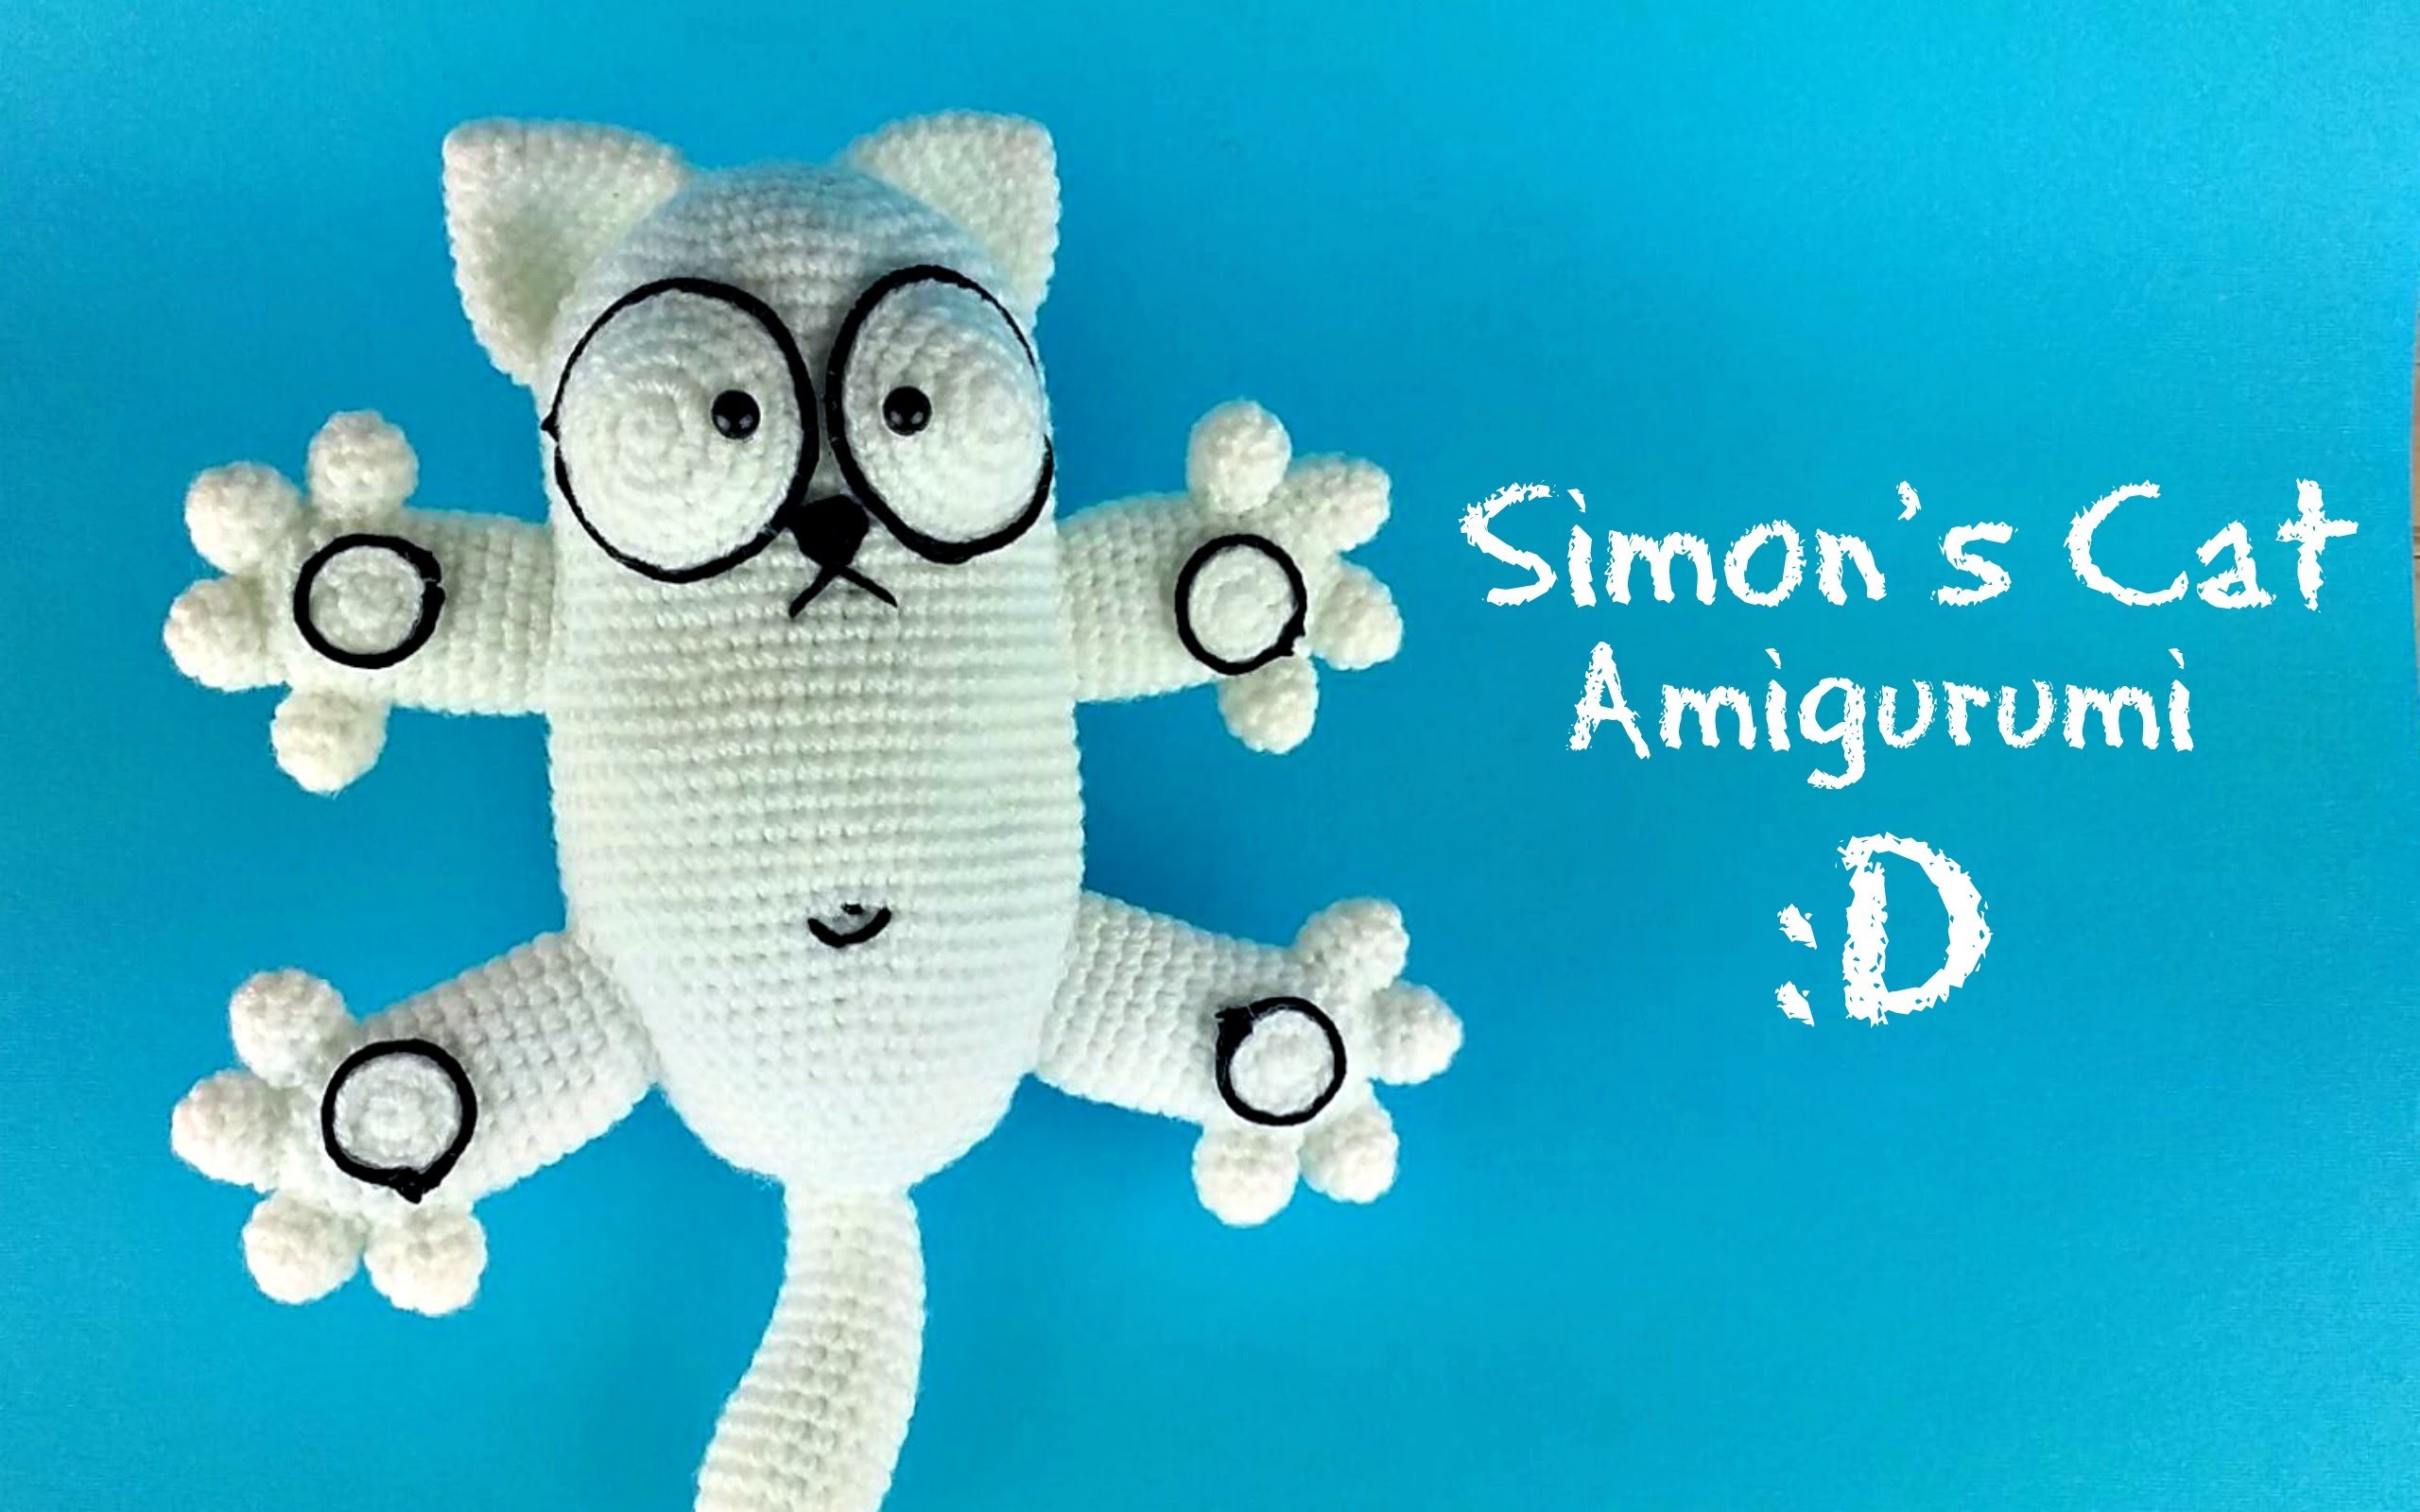 Simon's Cat Amigurumi